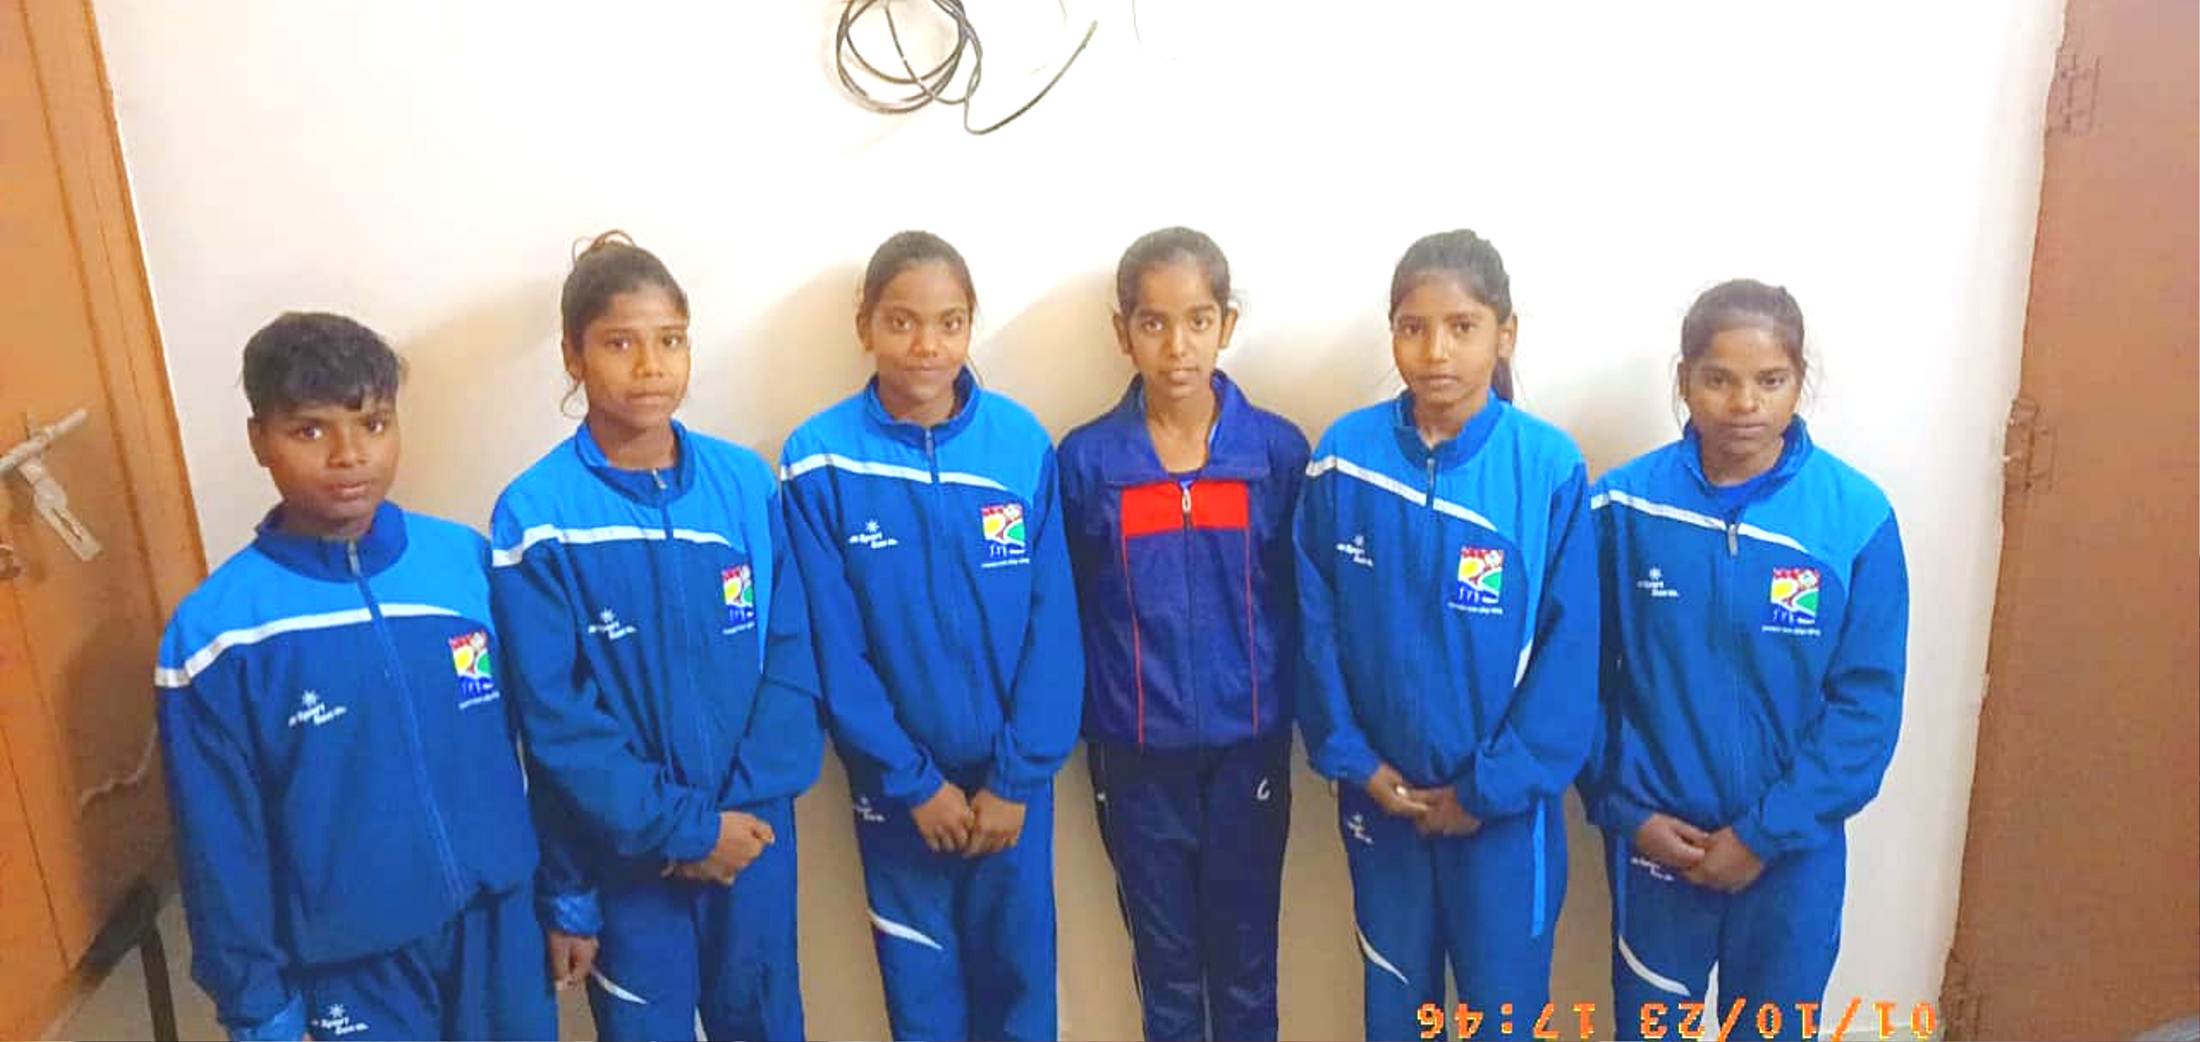 इस सरकारी स्कूल की 6 बालिकाएं राज्य टेनिस बॉल क्रिकेट में चयनित